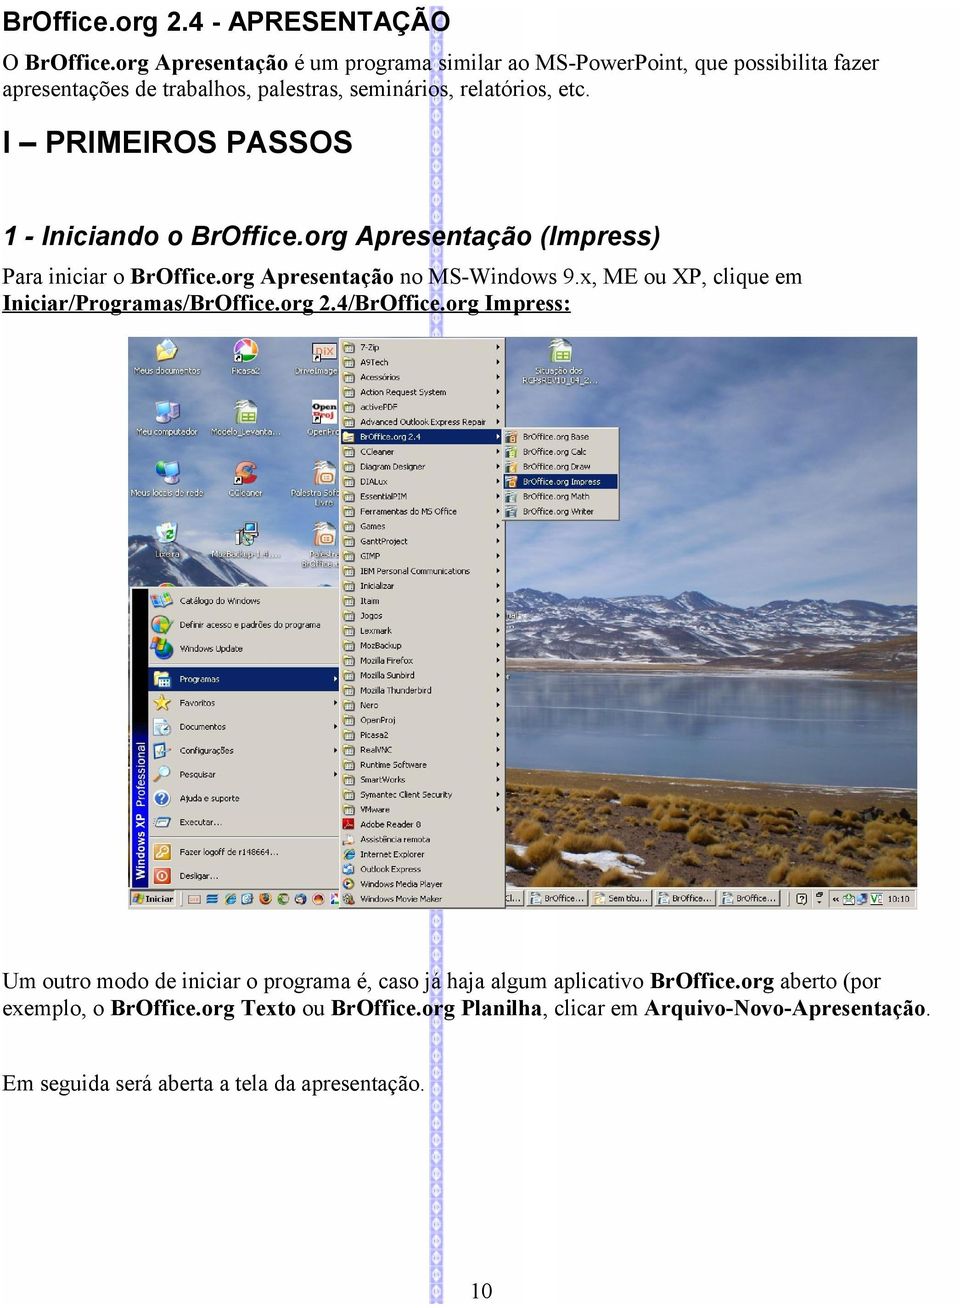 I PRIMEIROS PASSOS 1 - Iniciando o BrOffice.org Apresentação (Impress) Para iniciar o BrOffice.org Apresentação no MS-Windows 9.